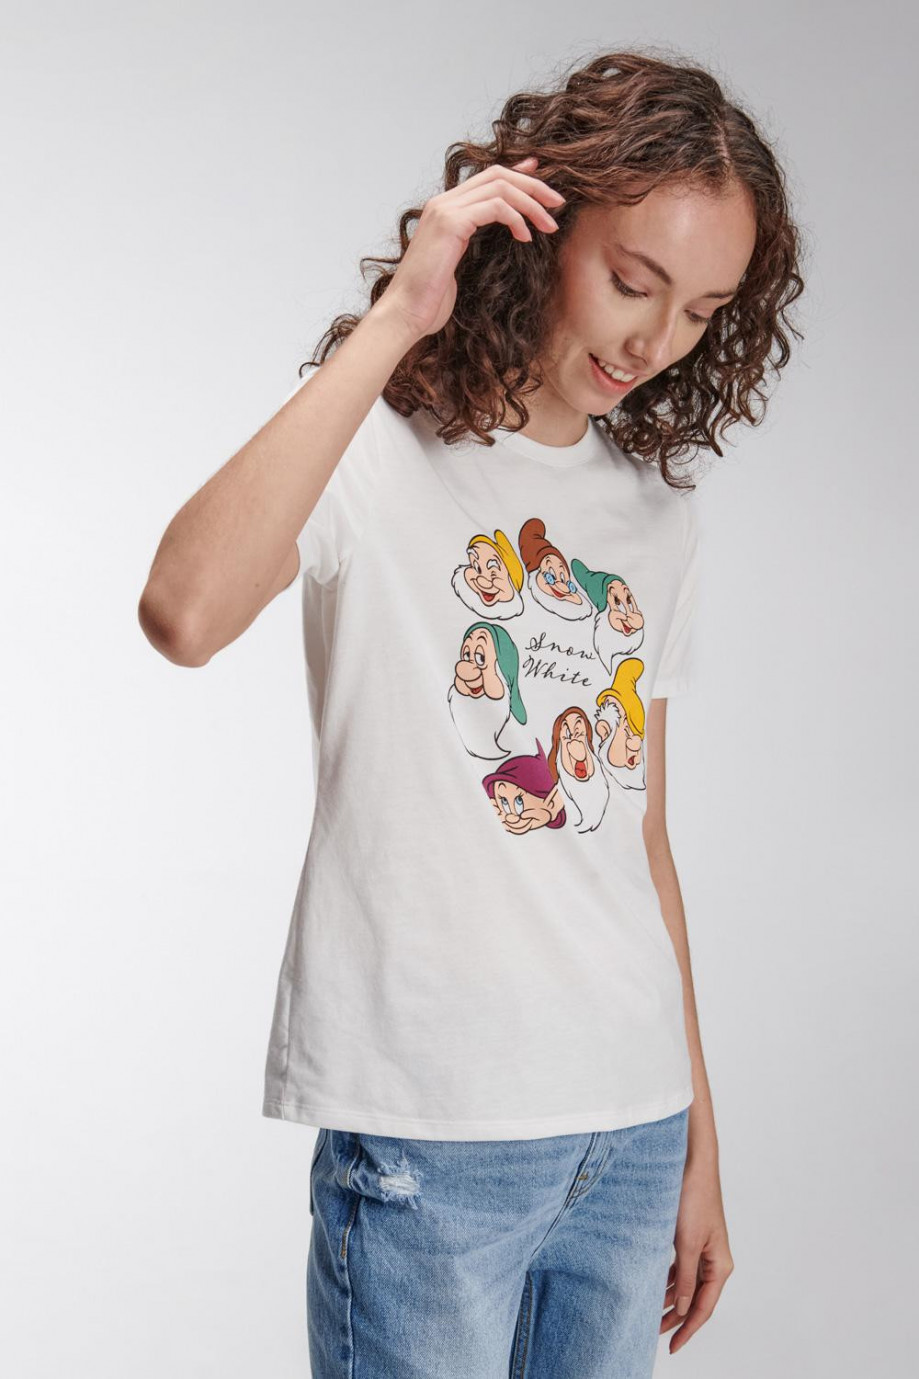 Camiseta manga corta de Blancanieves y los siete enanitos.